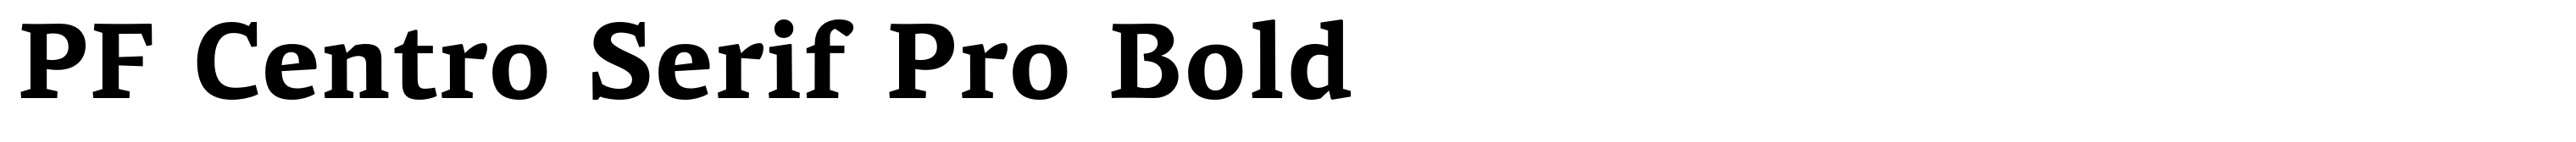 PF Centro Serif Pro Bold